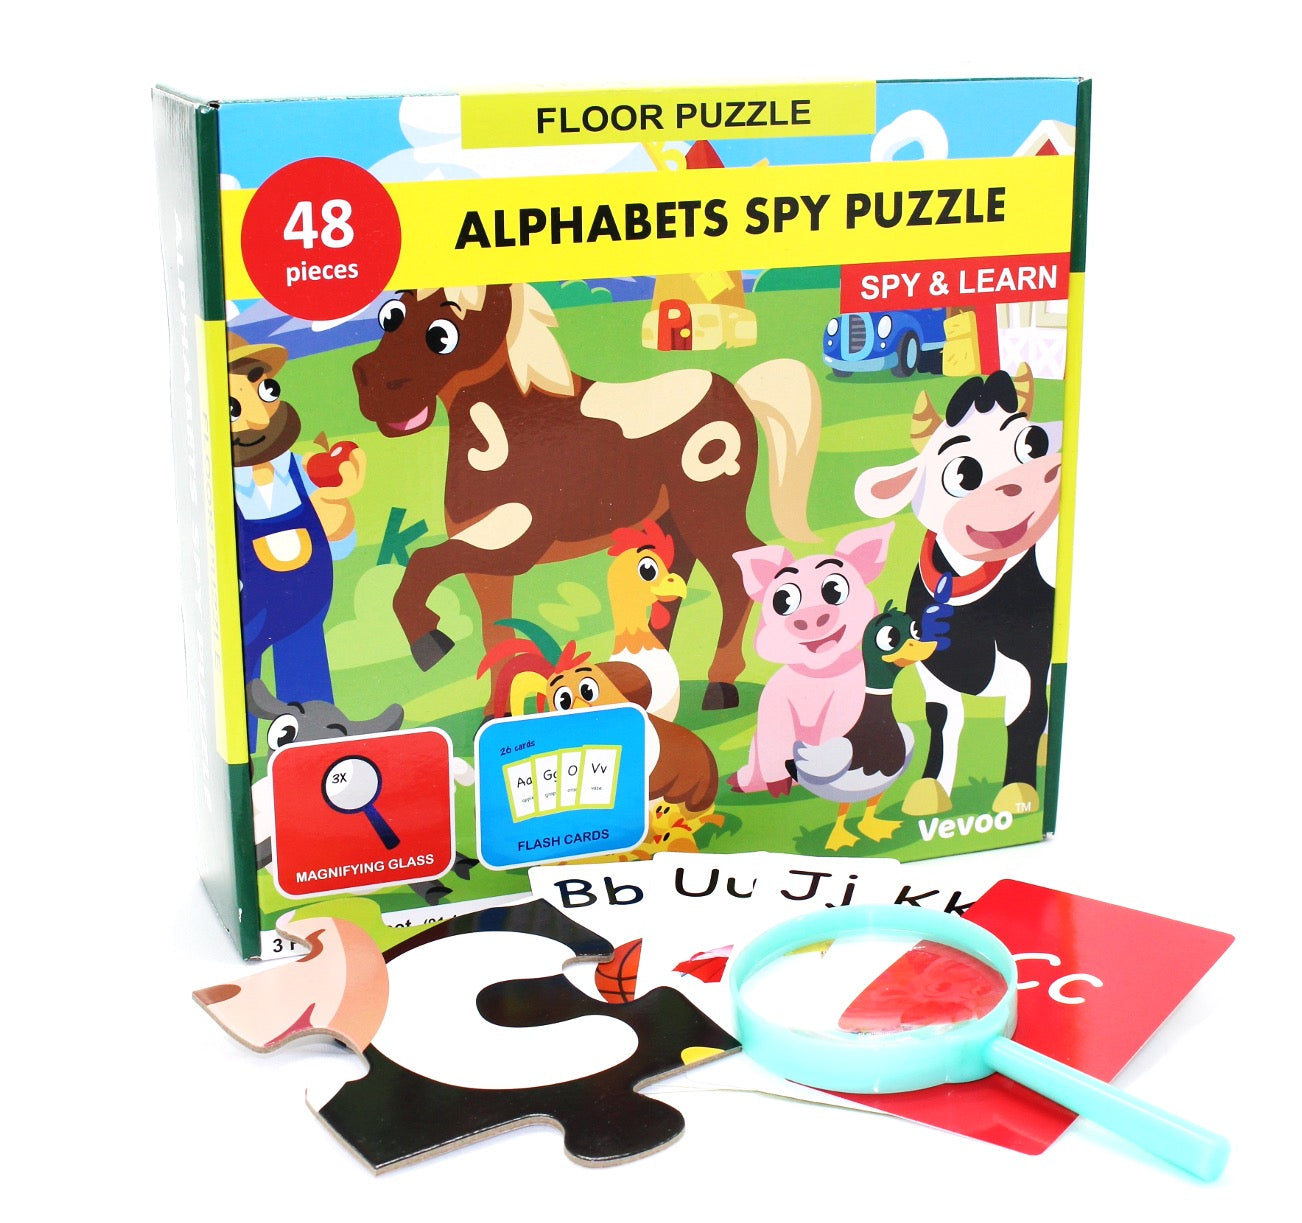 Alphabet Spy Puzzle